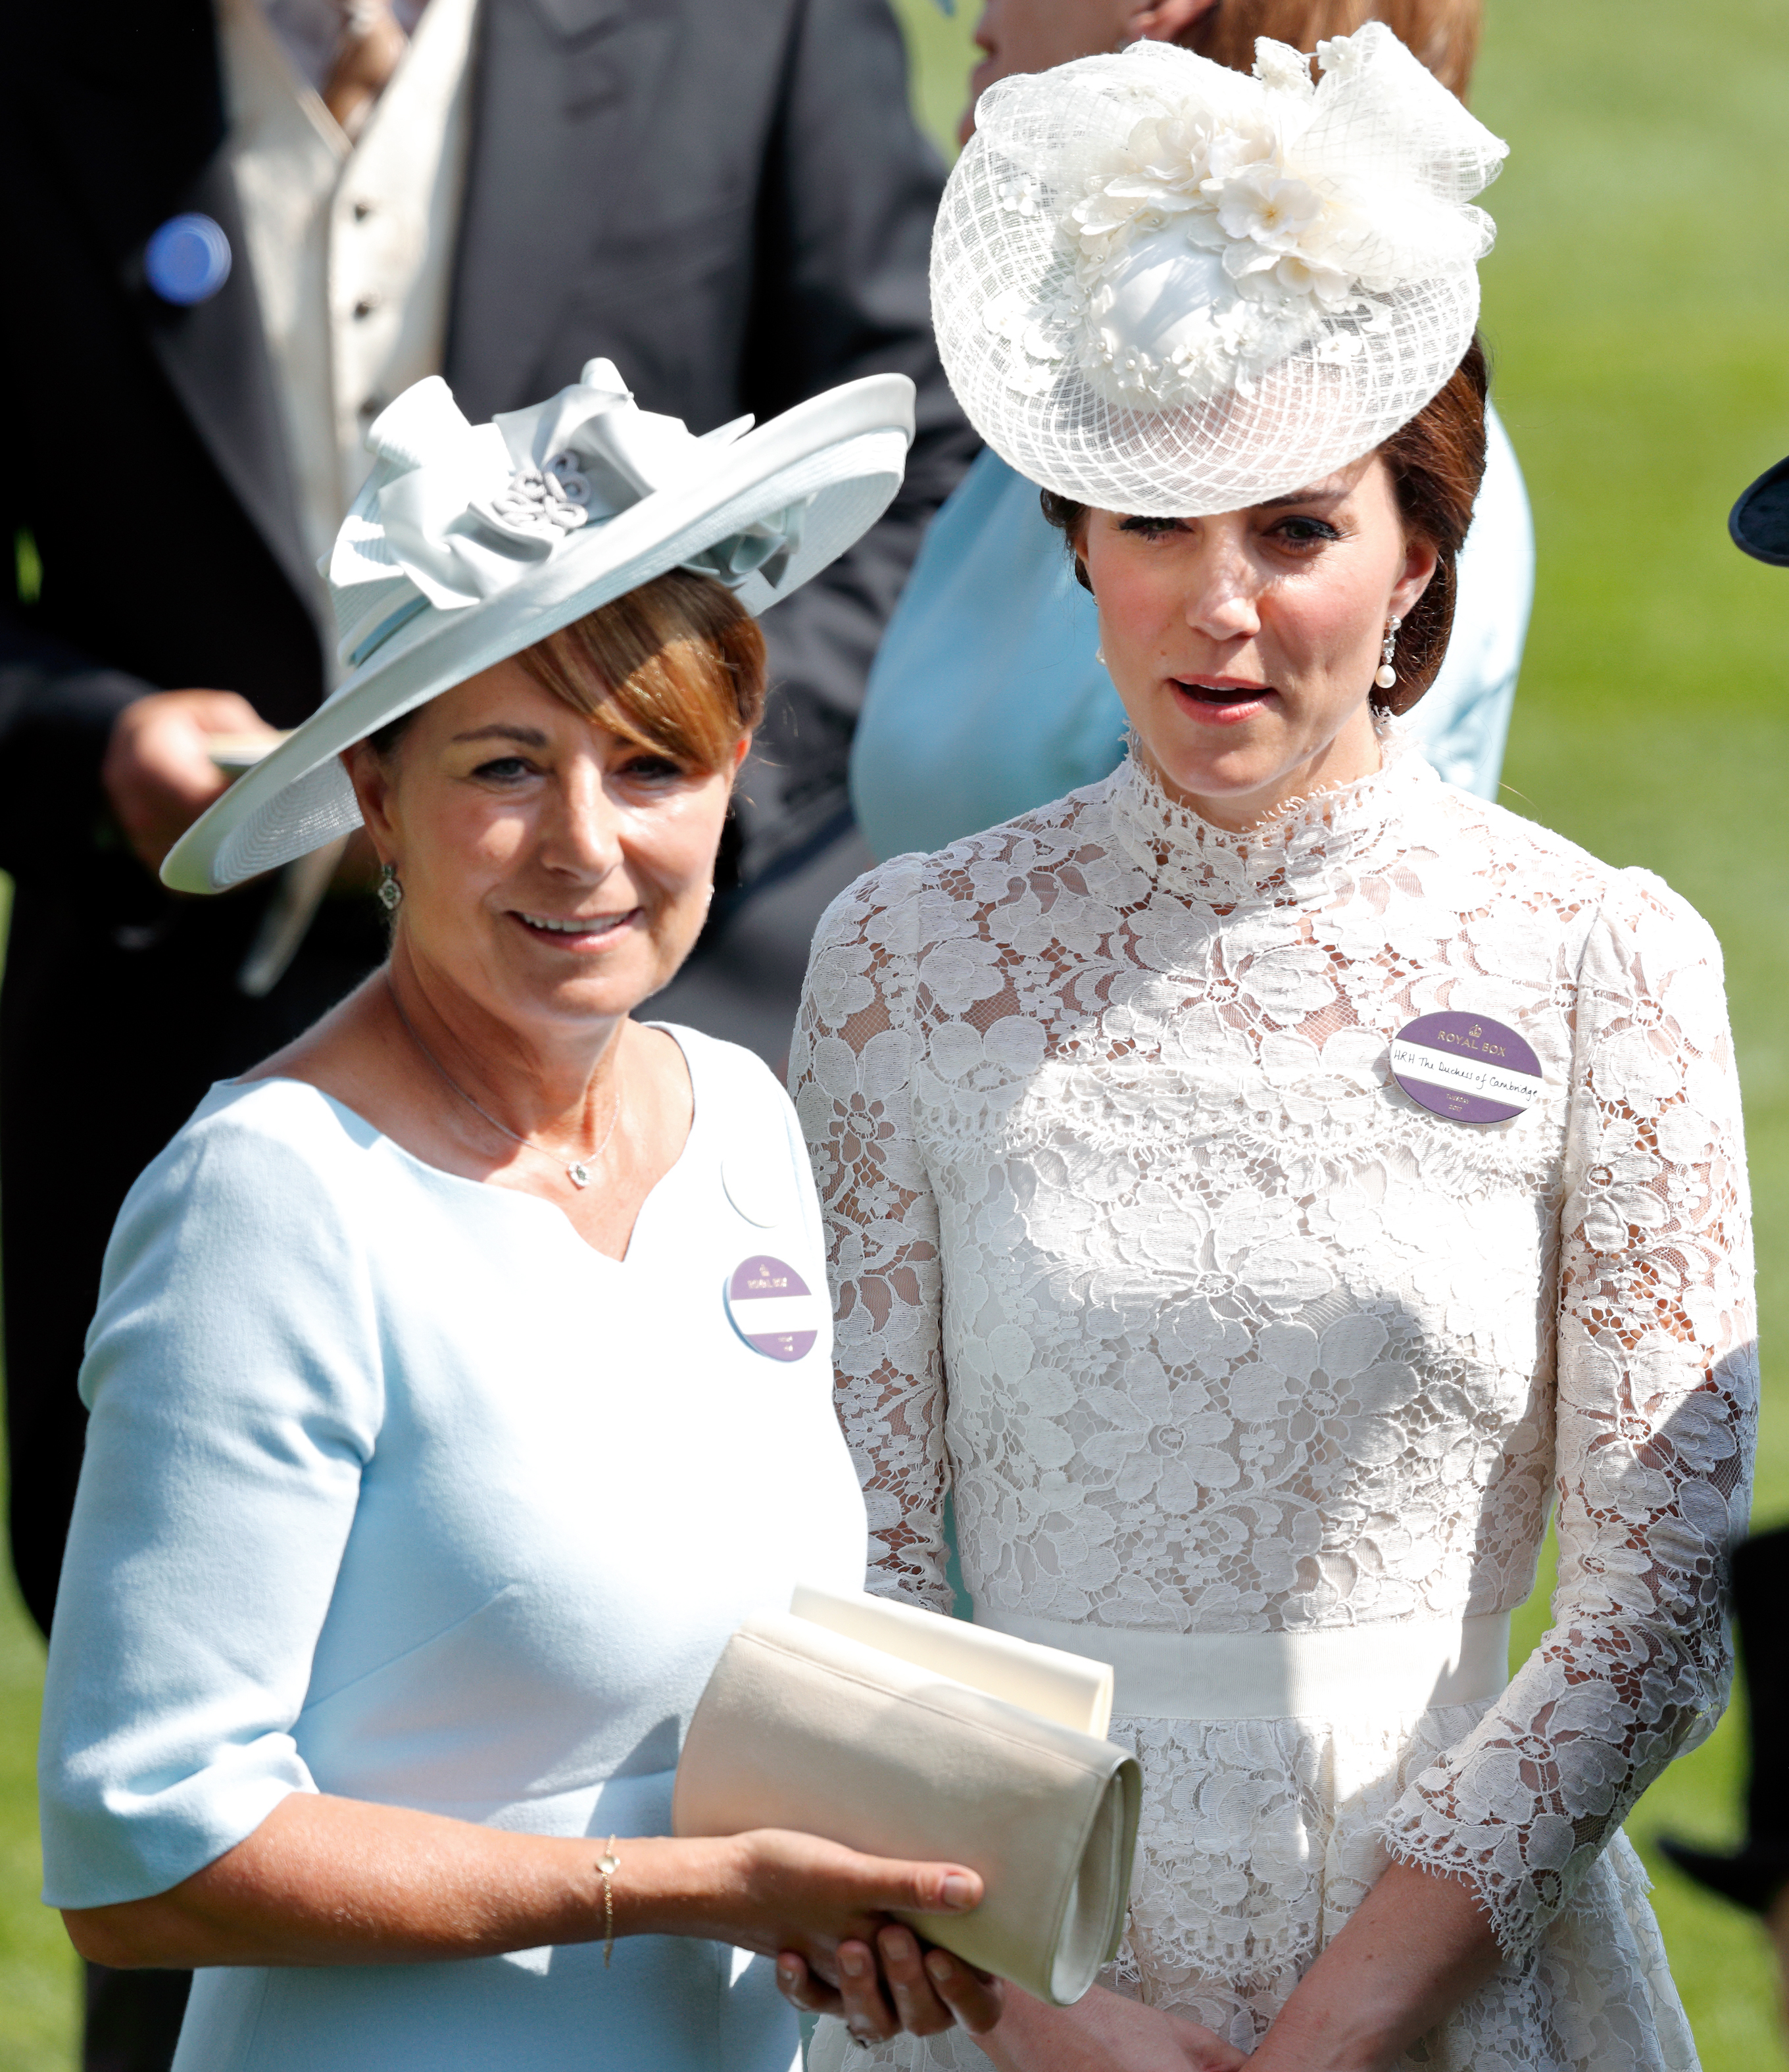 Carole Middleton und Catherine, Herzogin von Cambridge, besuchen Tag 1 von Royal Ascot auf der Ascot-Rennbahn in England, am 20. Juni 2017. | Quelle: Getty Images